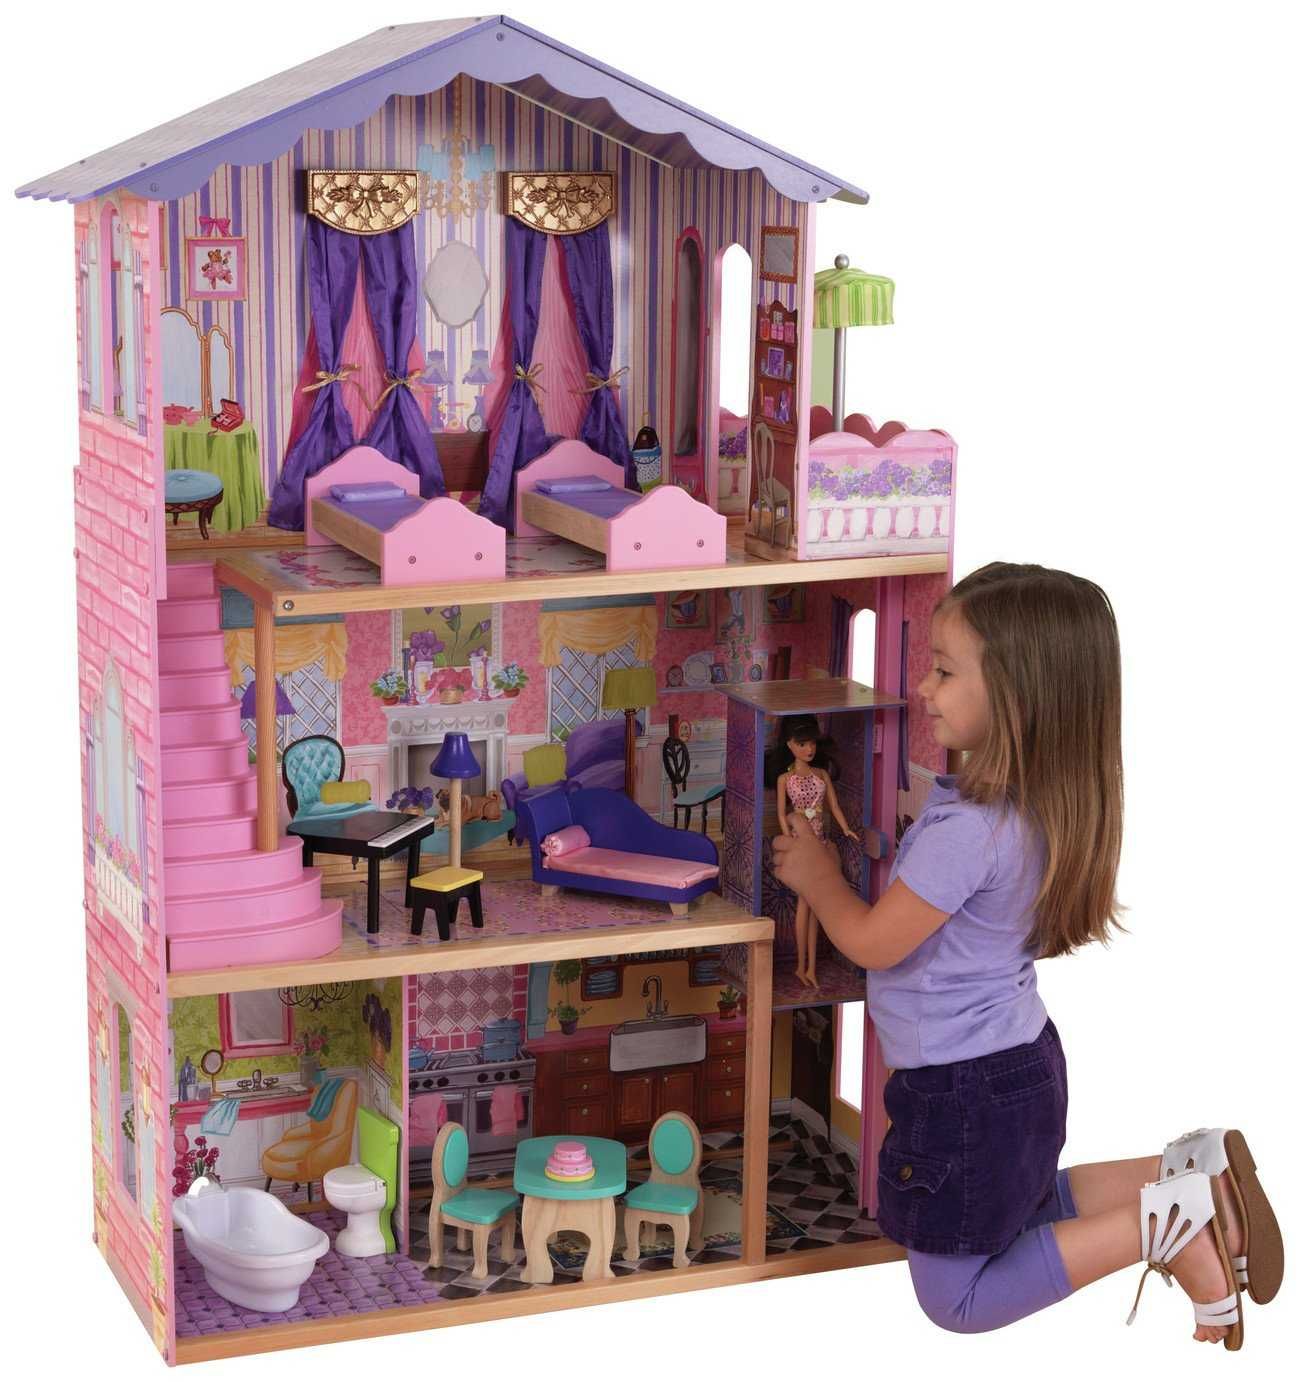 Drewniany domek dla lalek KindKraft "Mój wymarzony Dwór" duży 126 cm